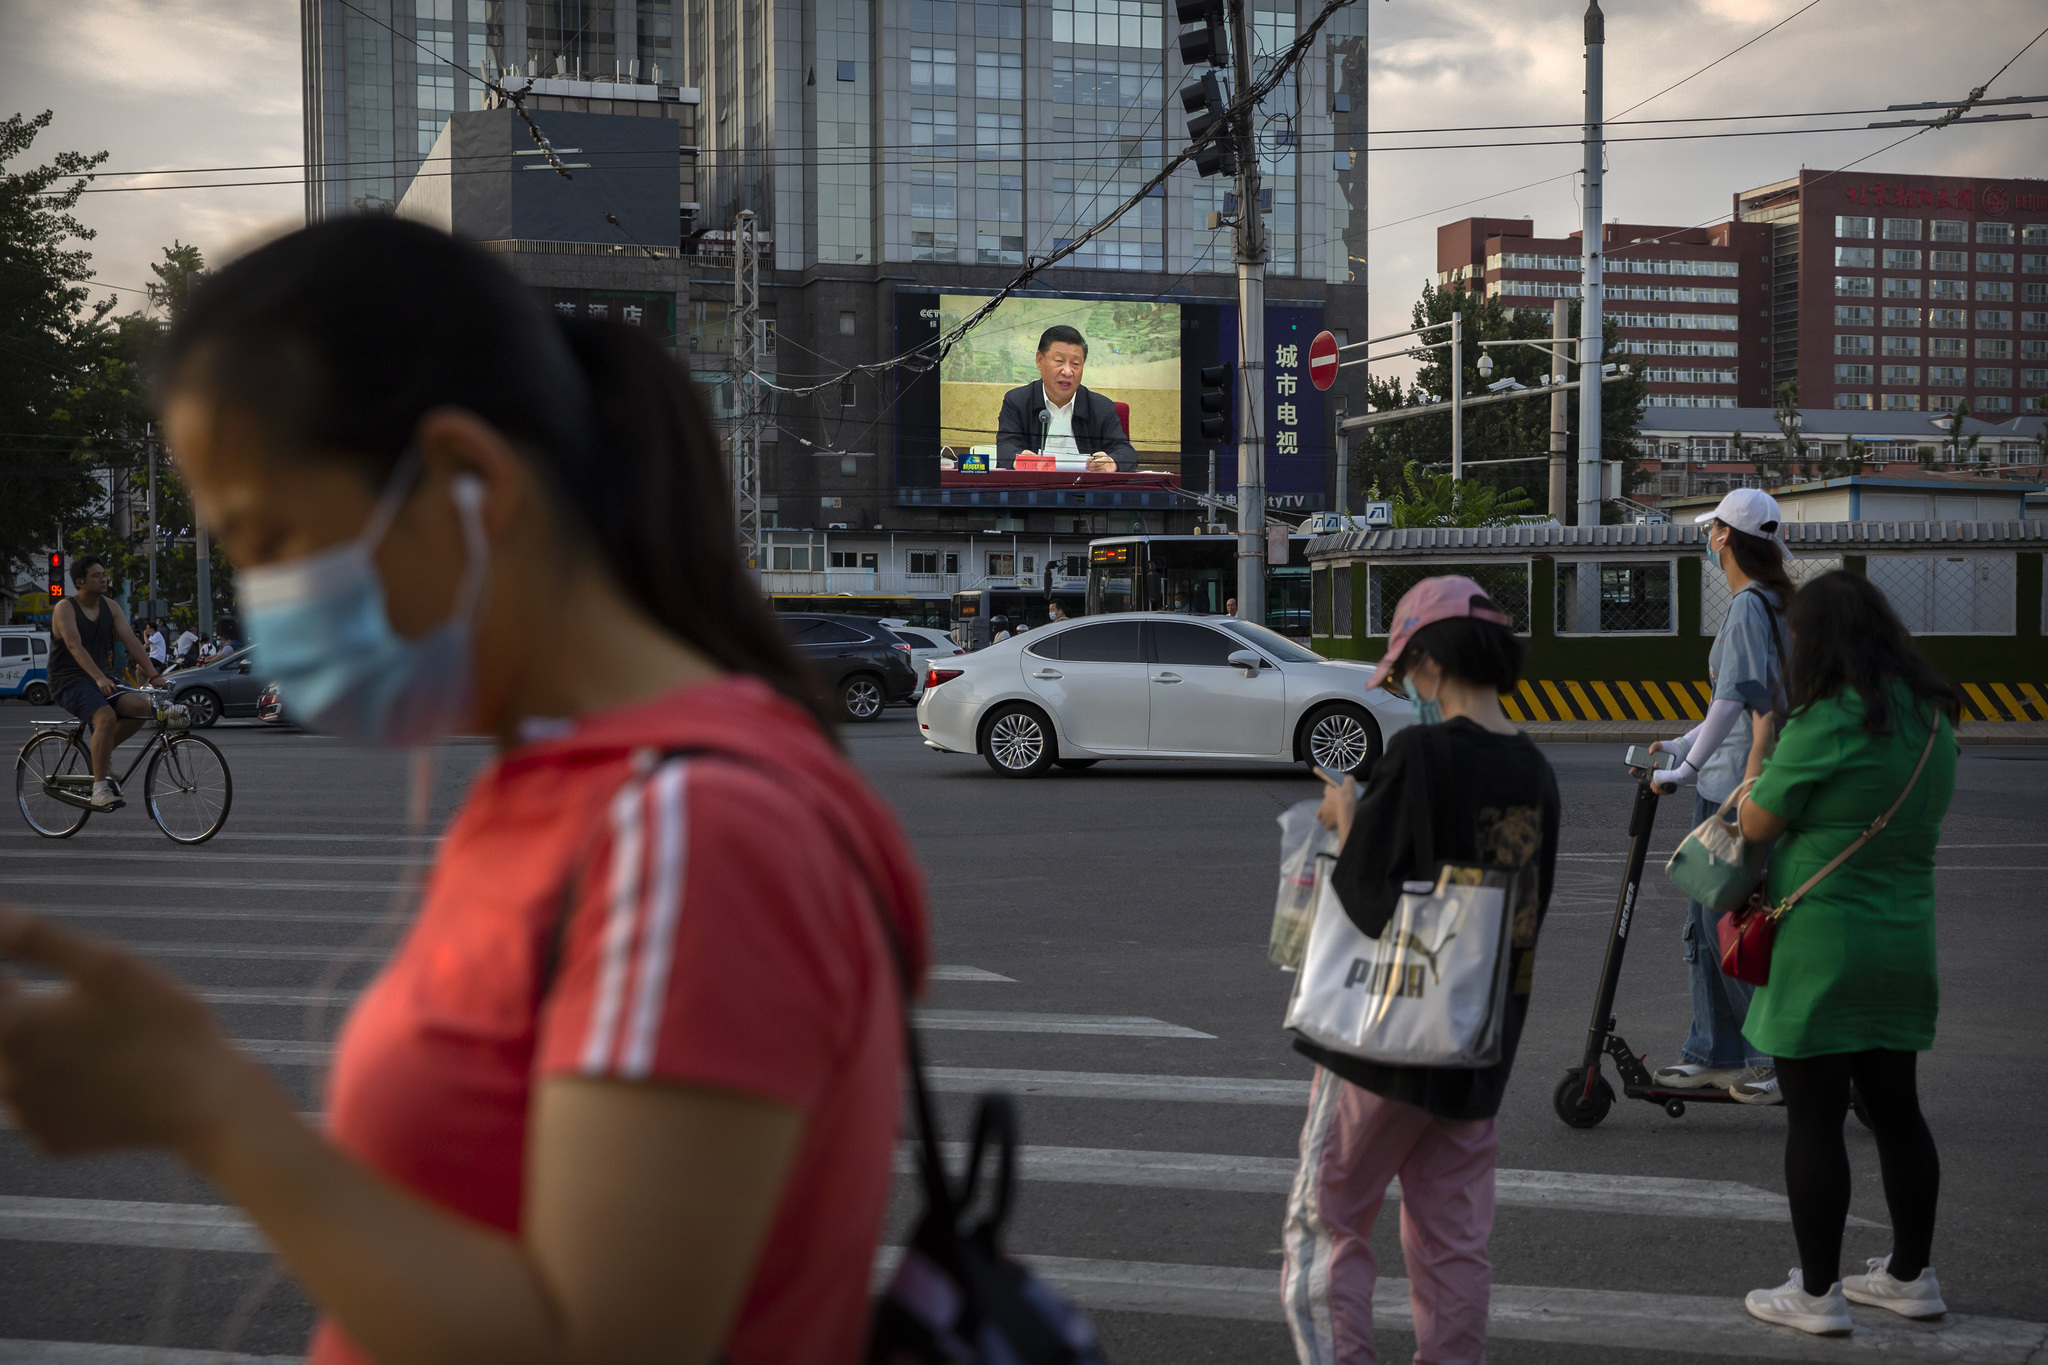 Pantalla con la imagen de Xi Jinping en una calle de Pekín.